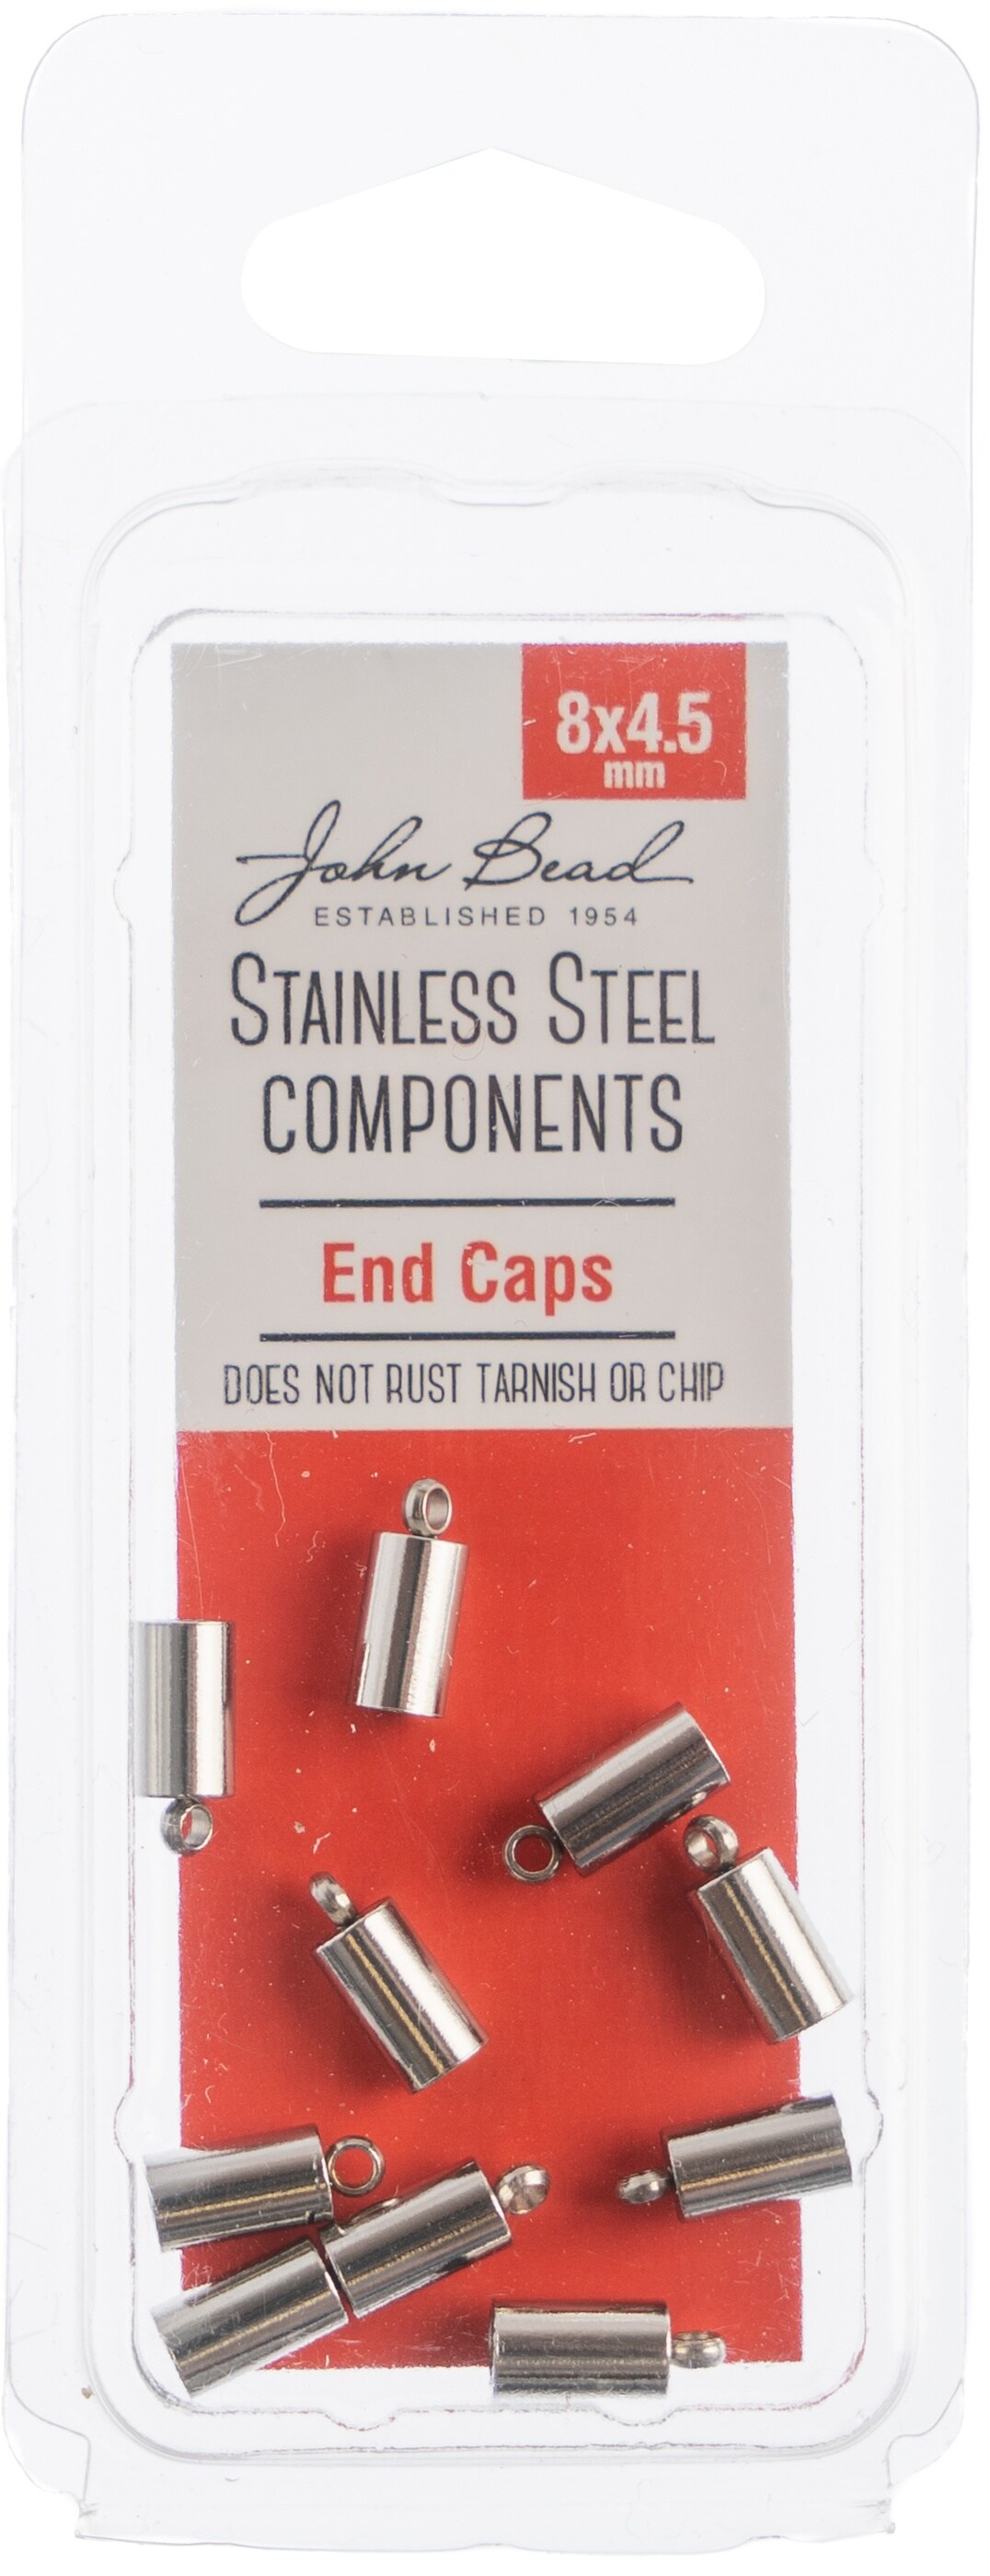 John Bead Stainless Steel End Cap 10/Pkg-8x4.5mm